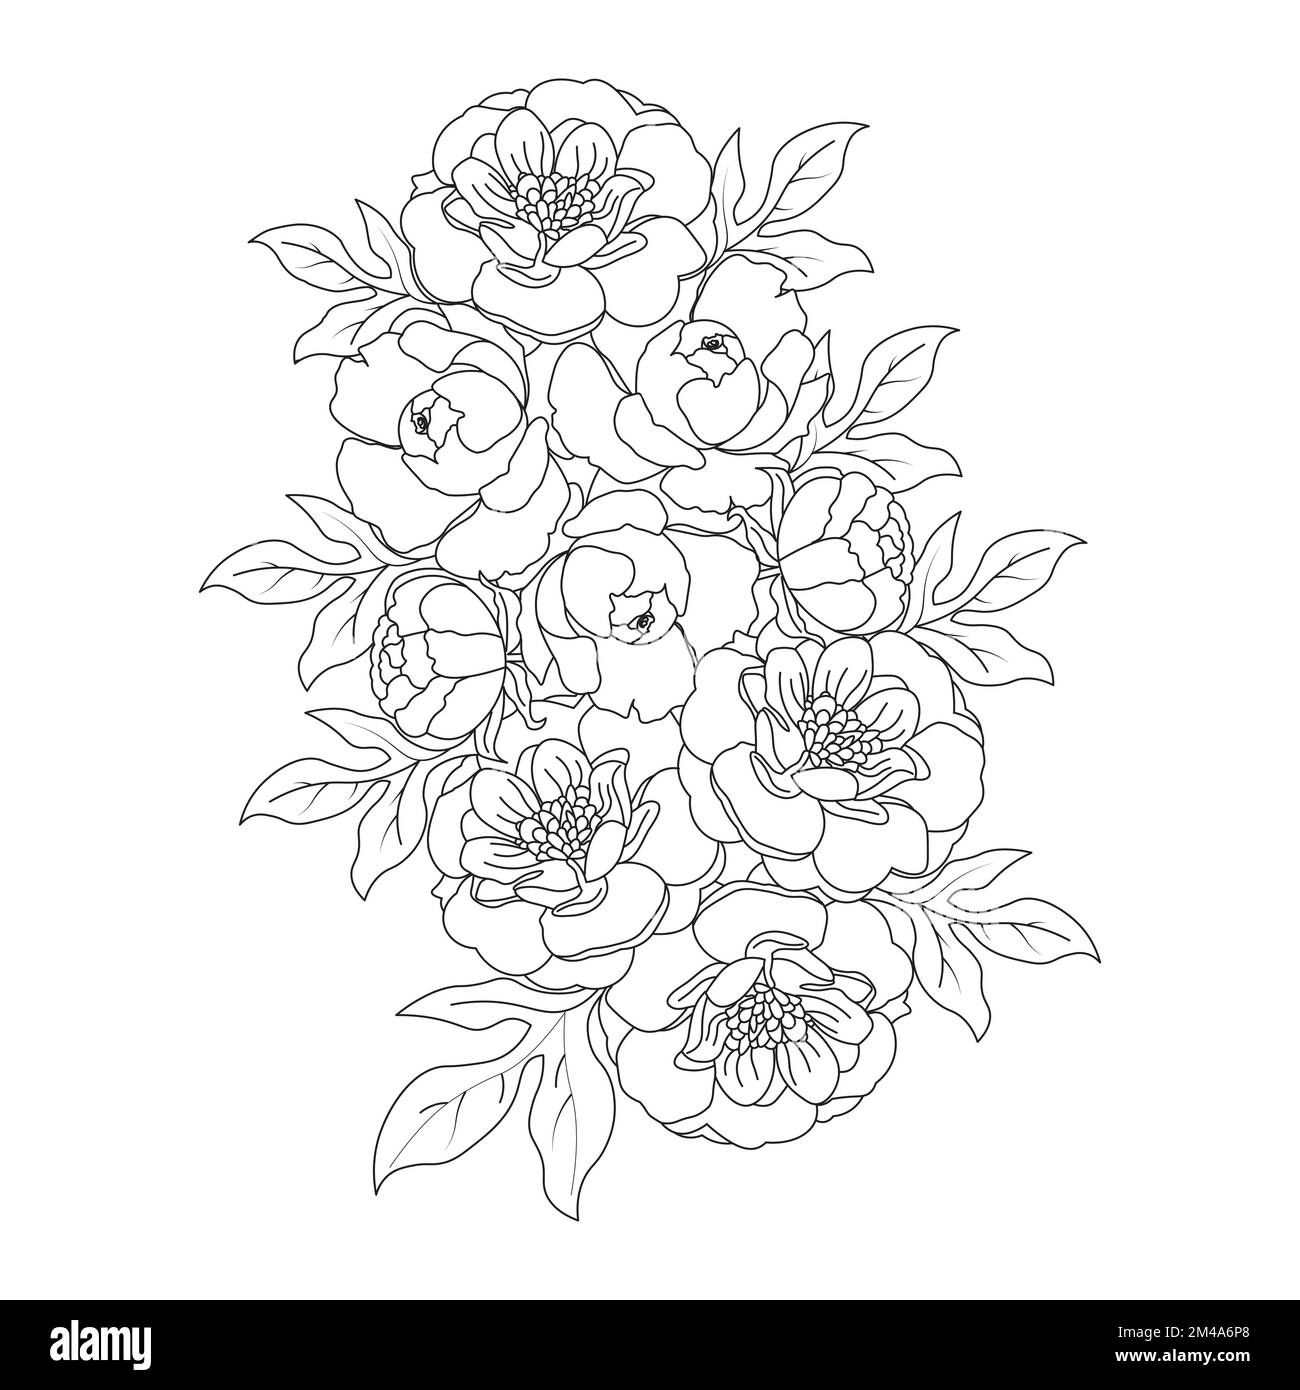 belle page de coloriage de fleurs avec dessin au crayon détaillé dans le graphique vectoriel de l'art au trait Illustration de Vecteur